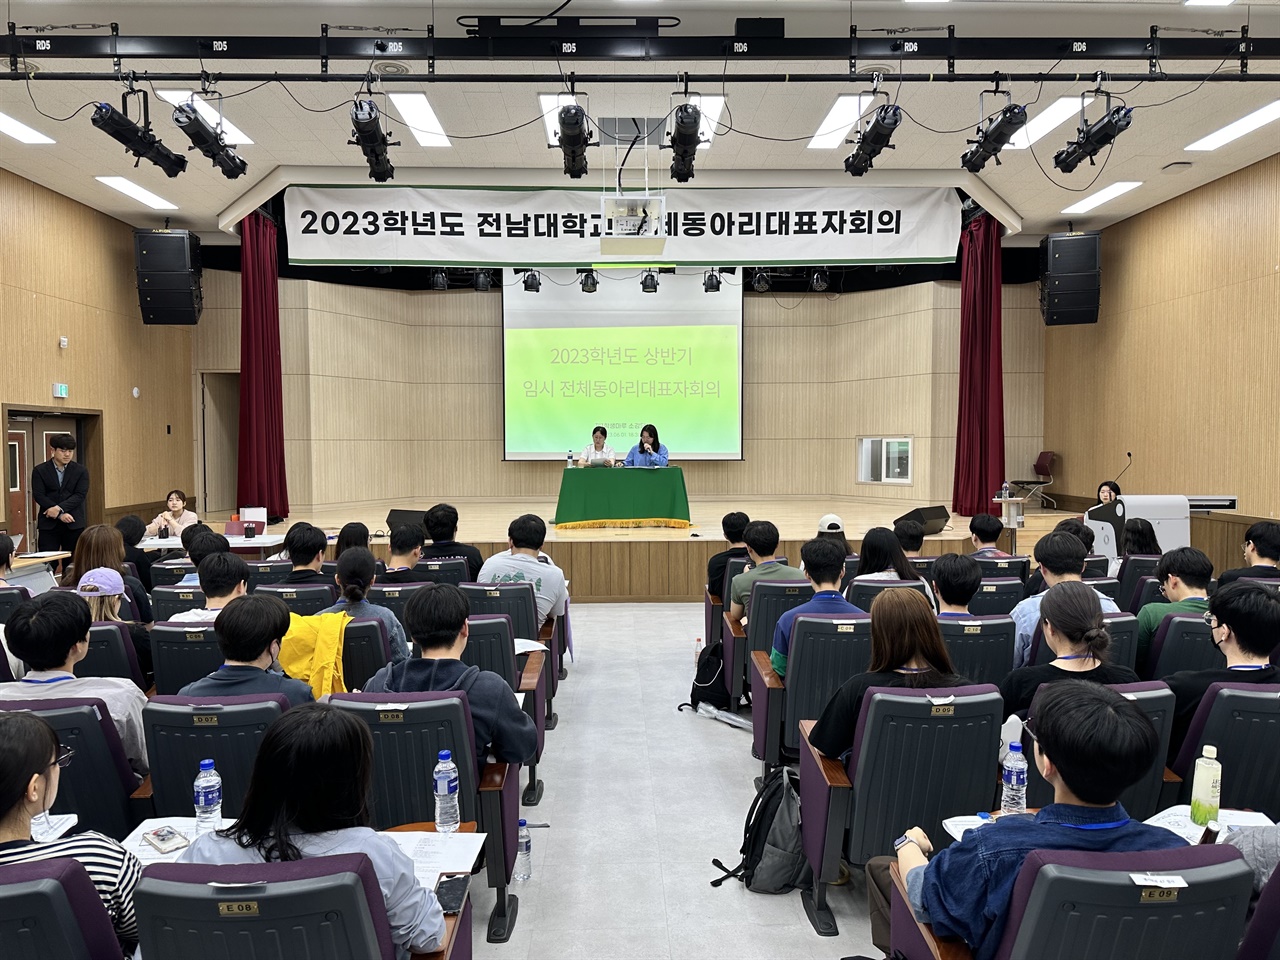 1일, 전남대 1학생회관에서 전남대 전체동아리대표자회의가 진행되고 있다.